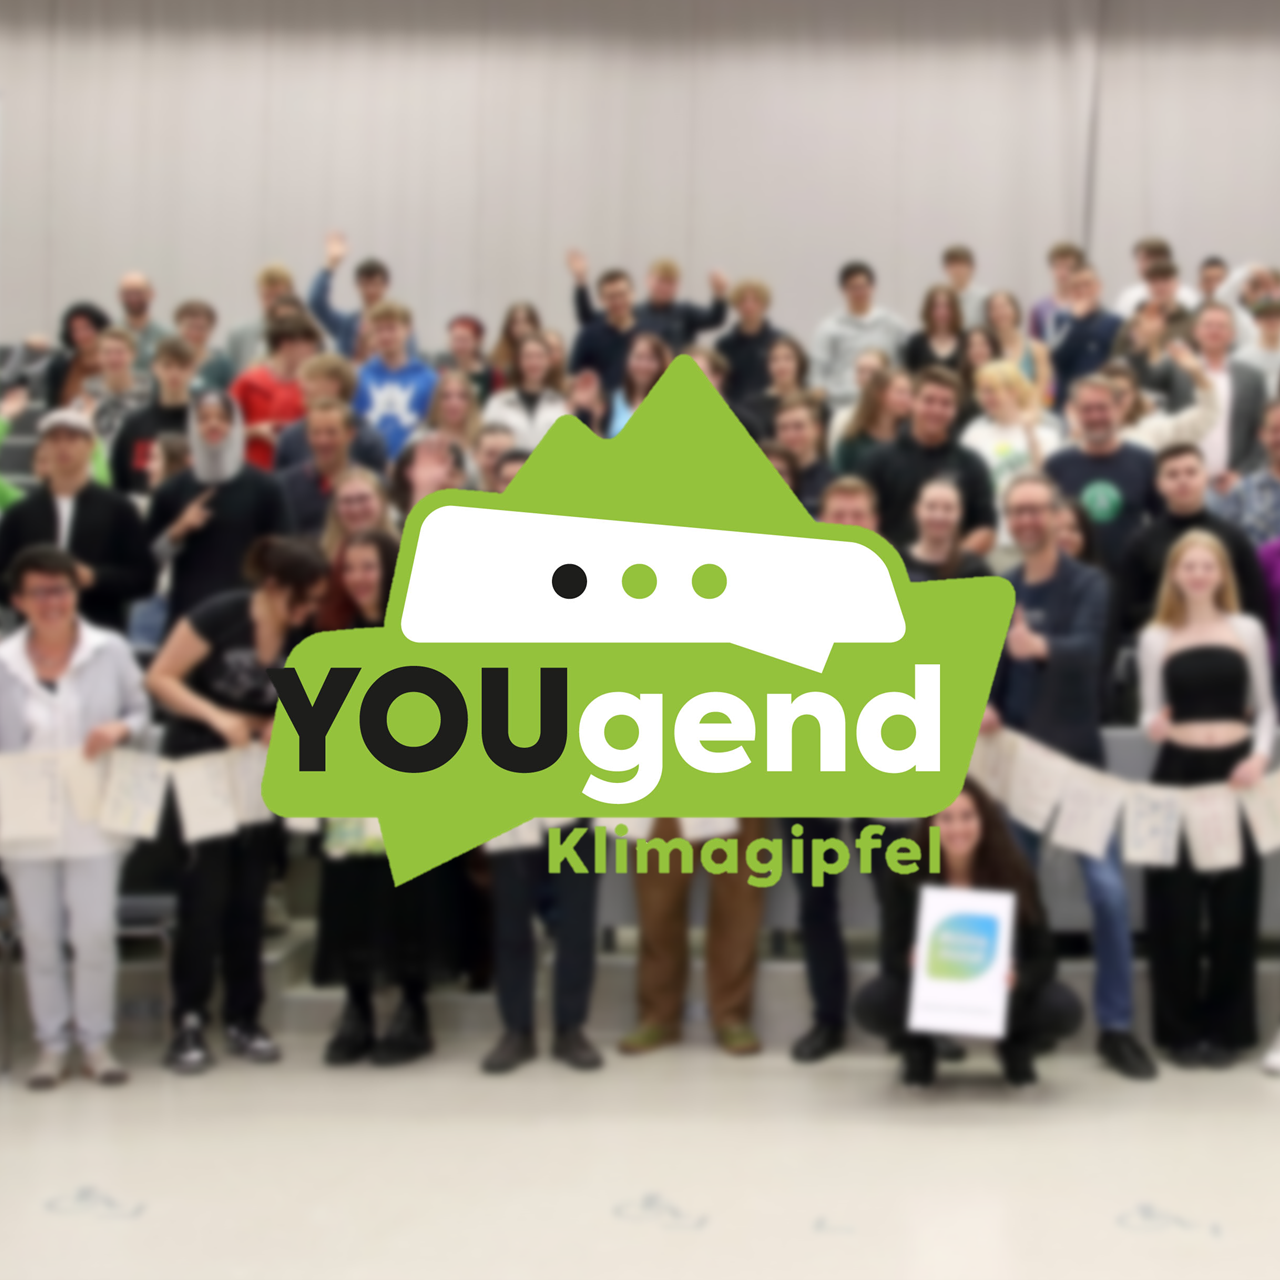 4. OÖ Jugendklimagipfel Jugendliche im Hintergrund, davor Logo von Jugendklimagipfel